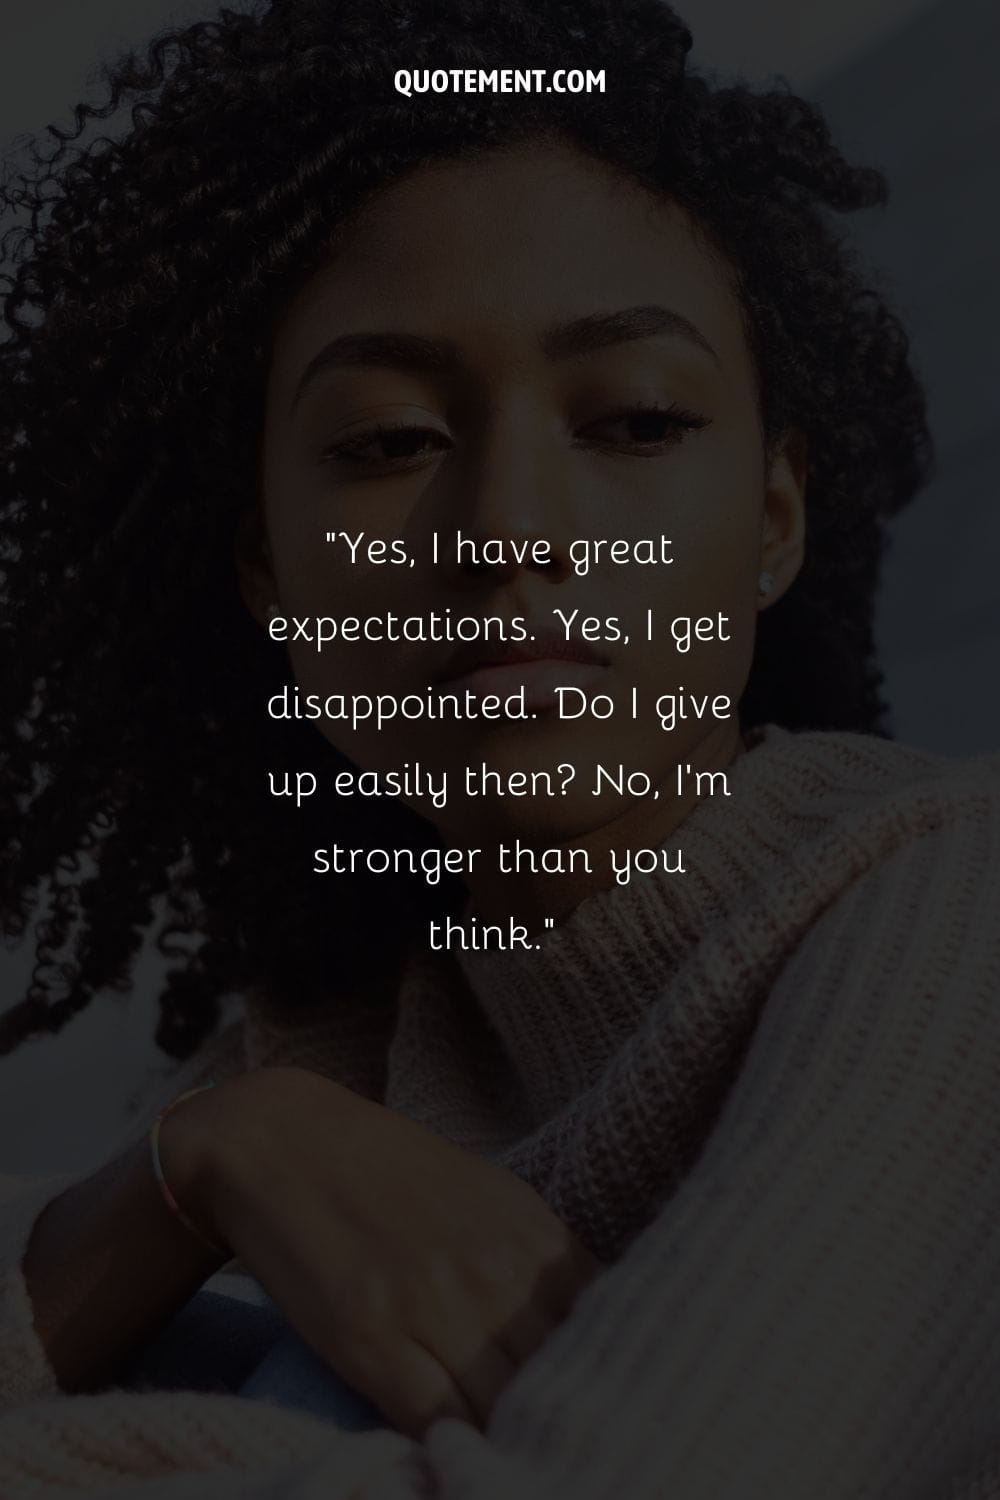 Sí, tengo grandes expectativas. Sí, me decepciono. No, soy más fuerte de lo que crees.